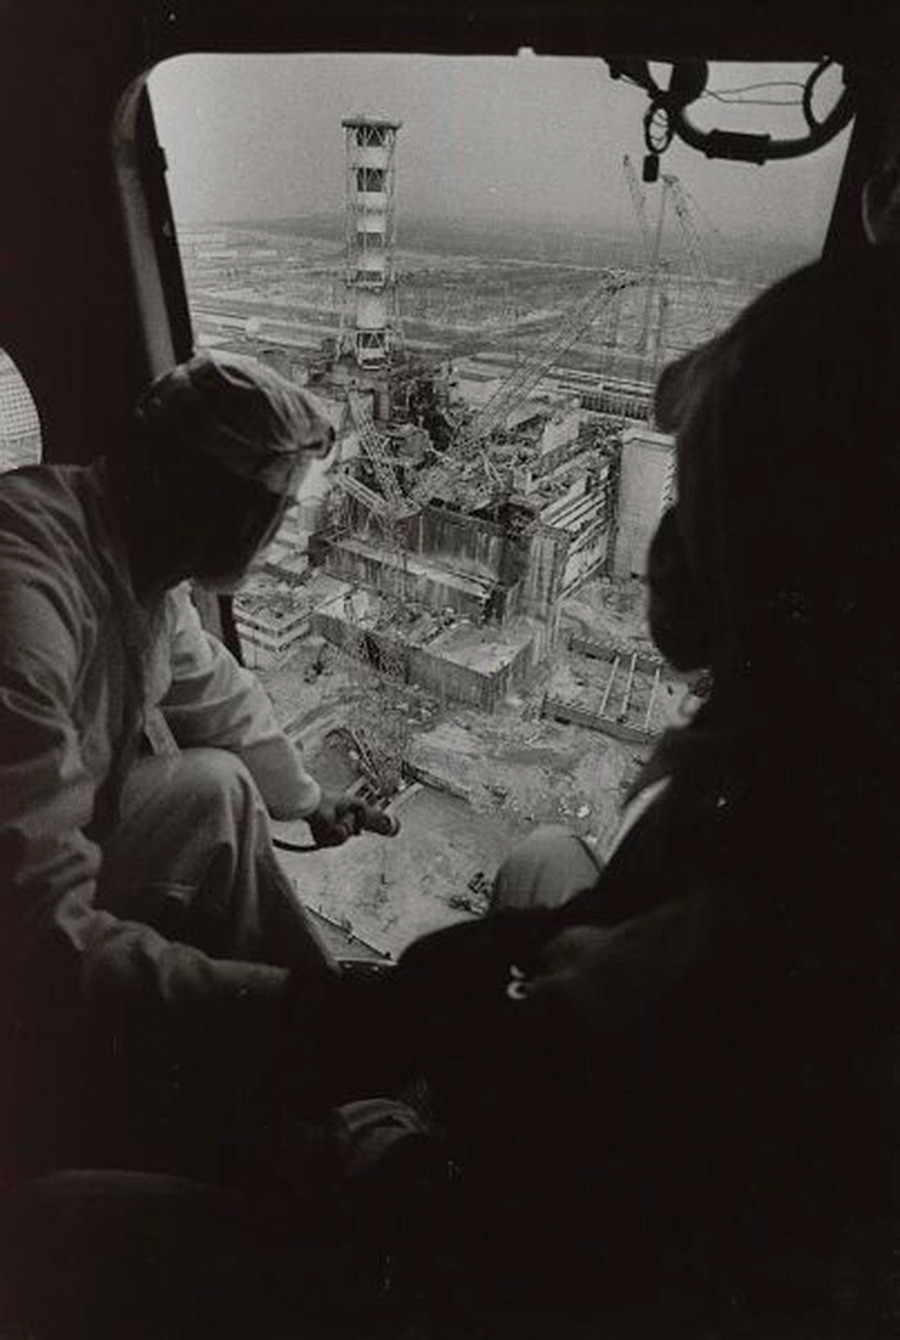 Pengukuran radiasi Chernobyl dari helikopter, 1986.

